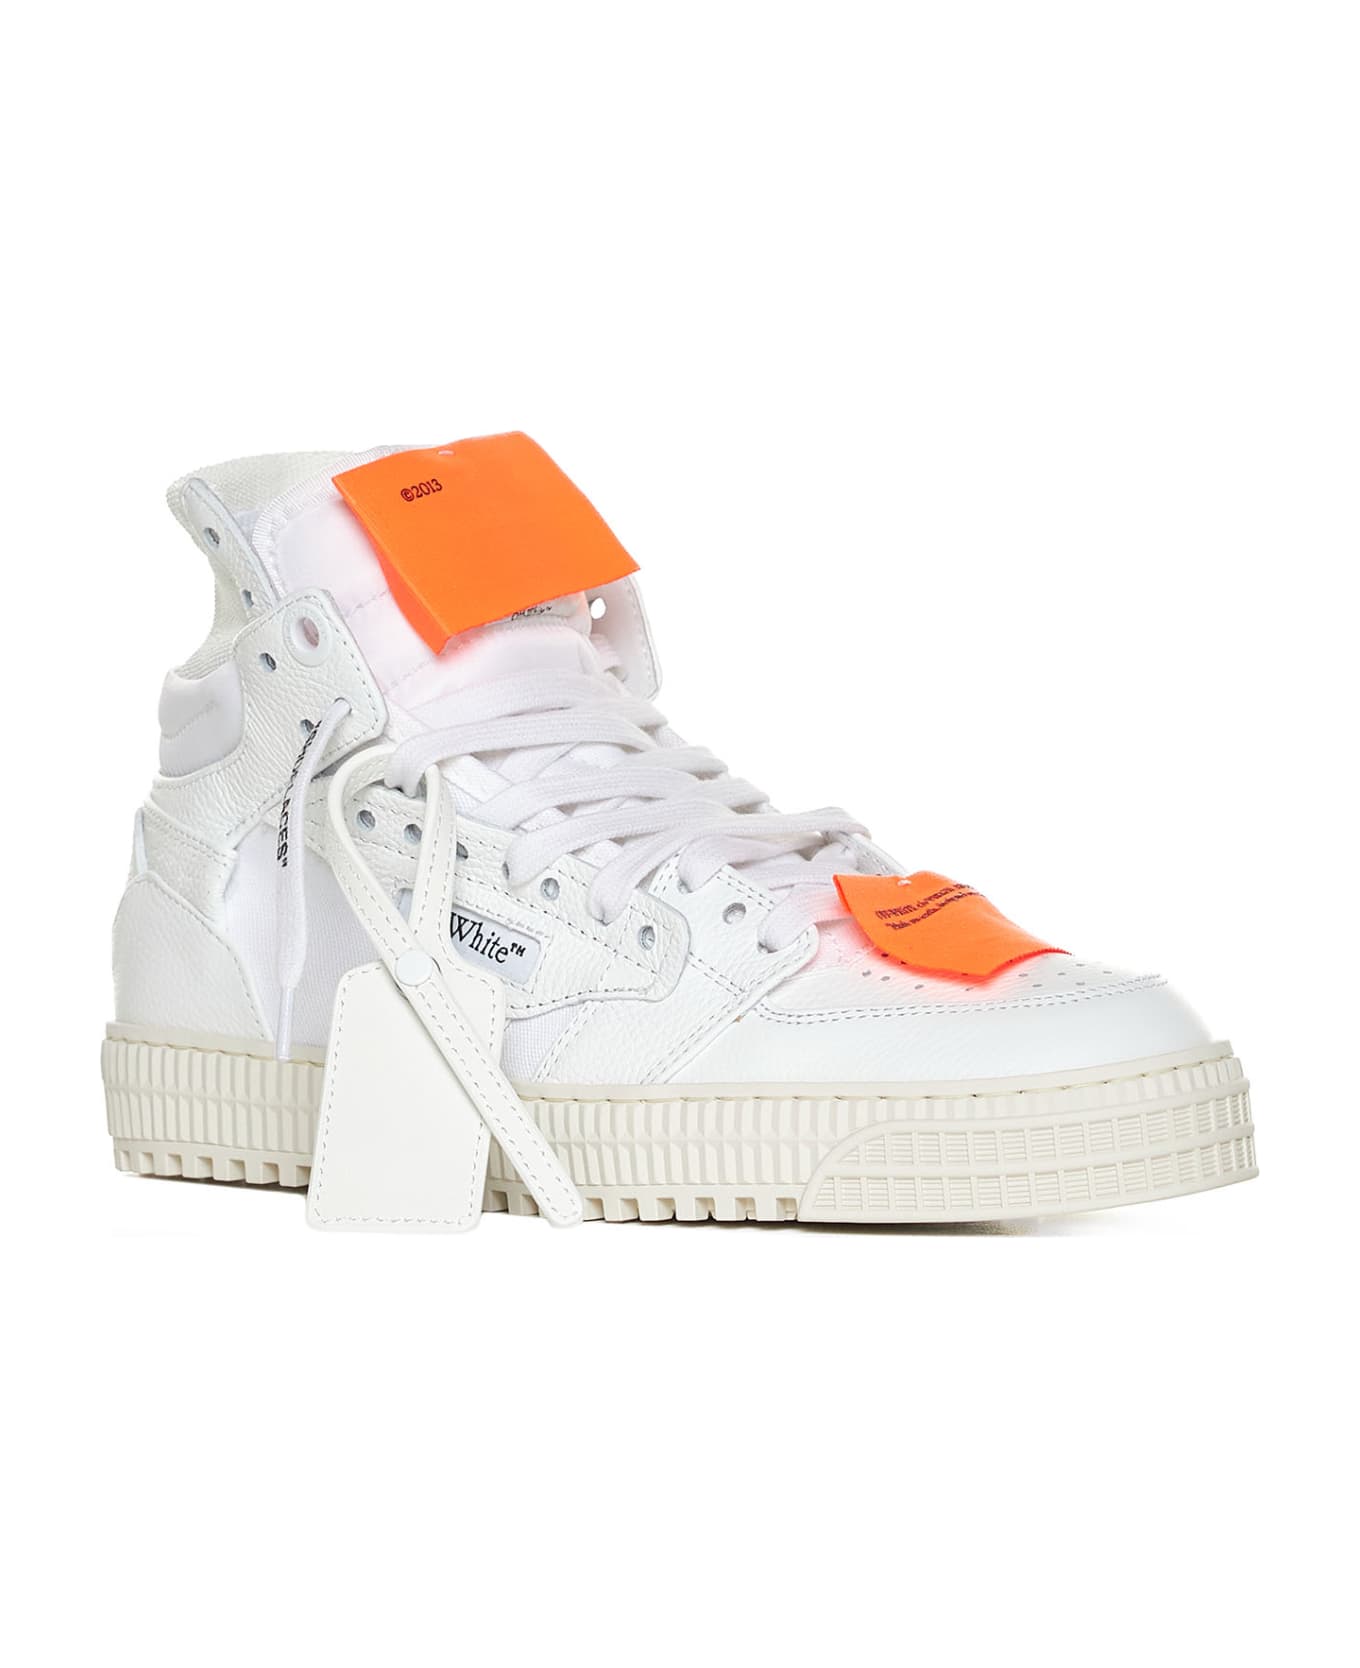 Off-White Sneakers - White orange